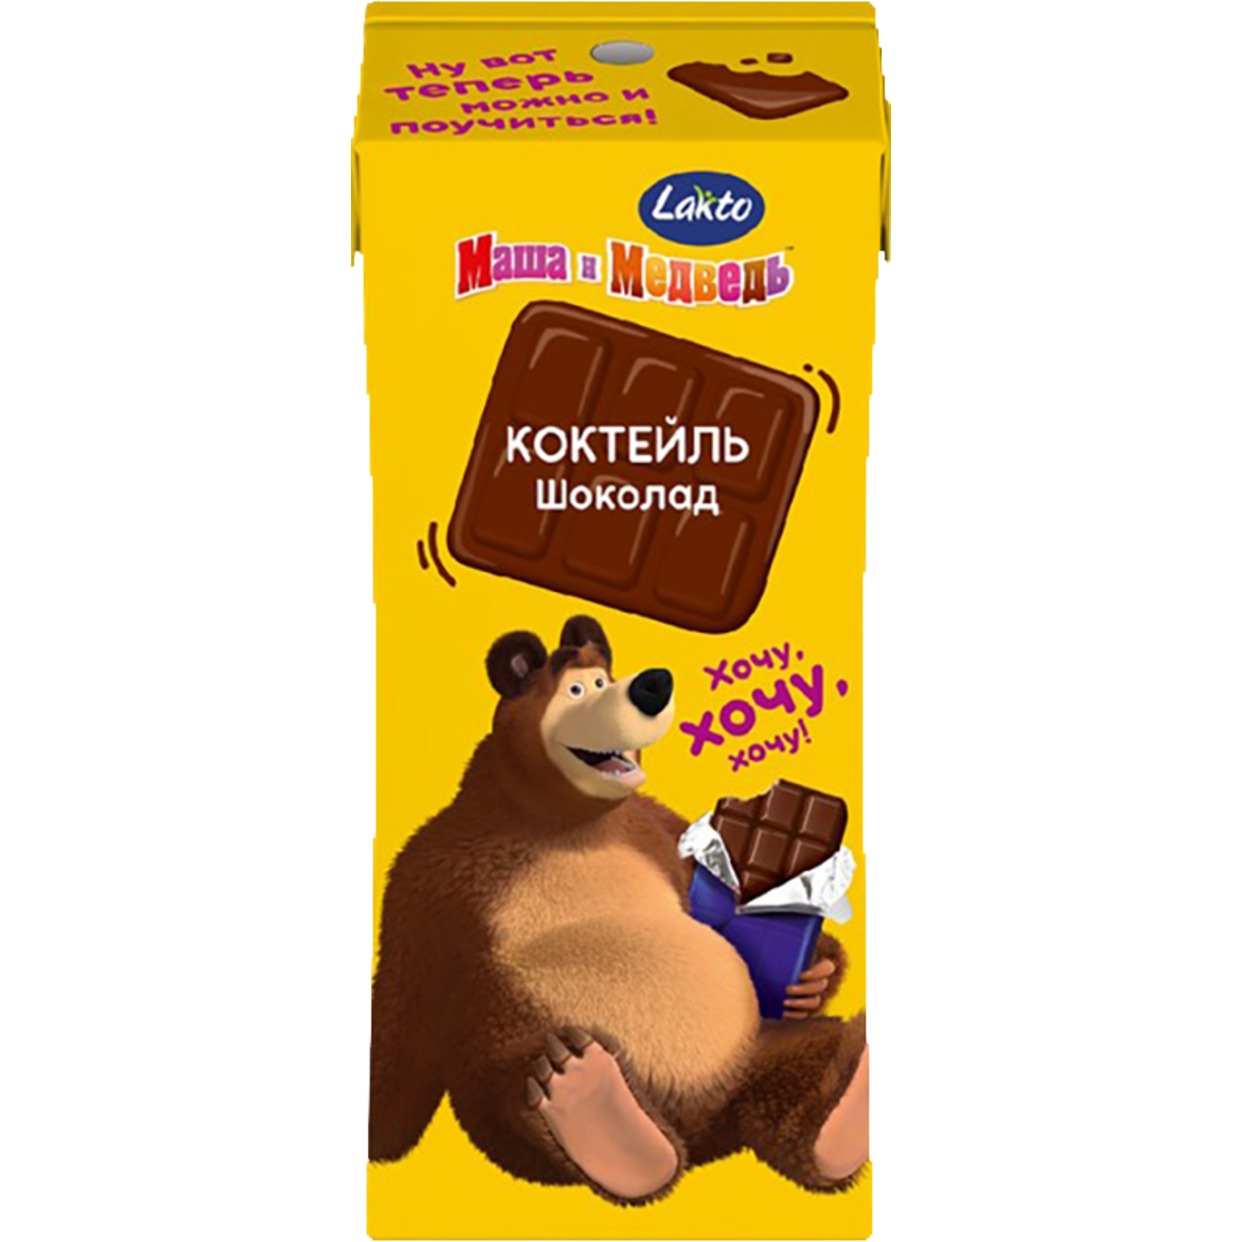 Коктейль молочный Маша и Медведь Шоколад 2,3 % 200 мл по акции в Пятерочке